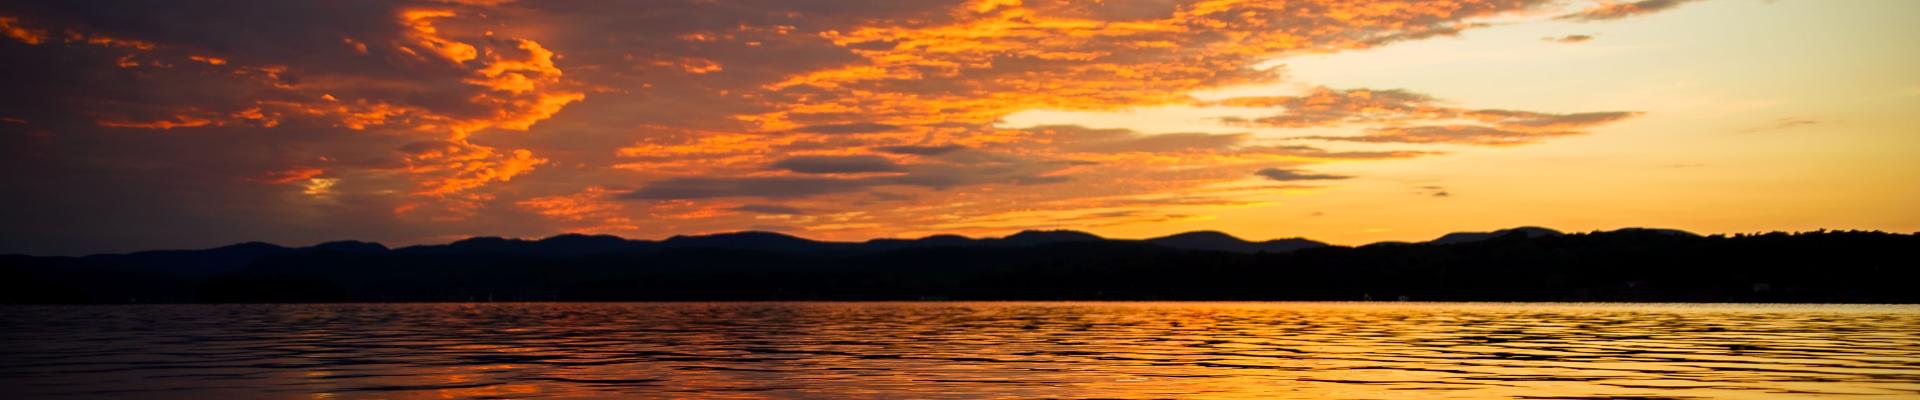 Vermont skyline at sunset